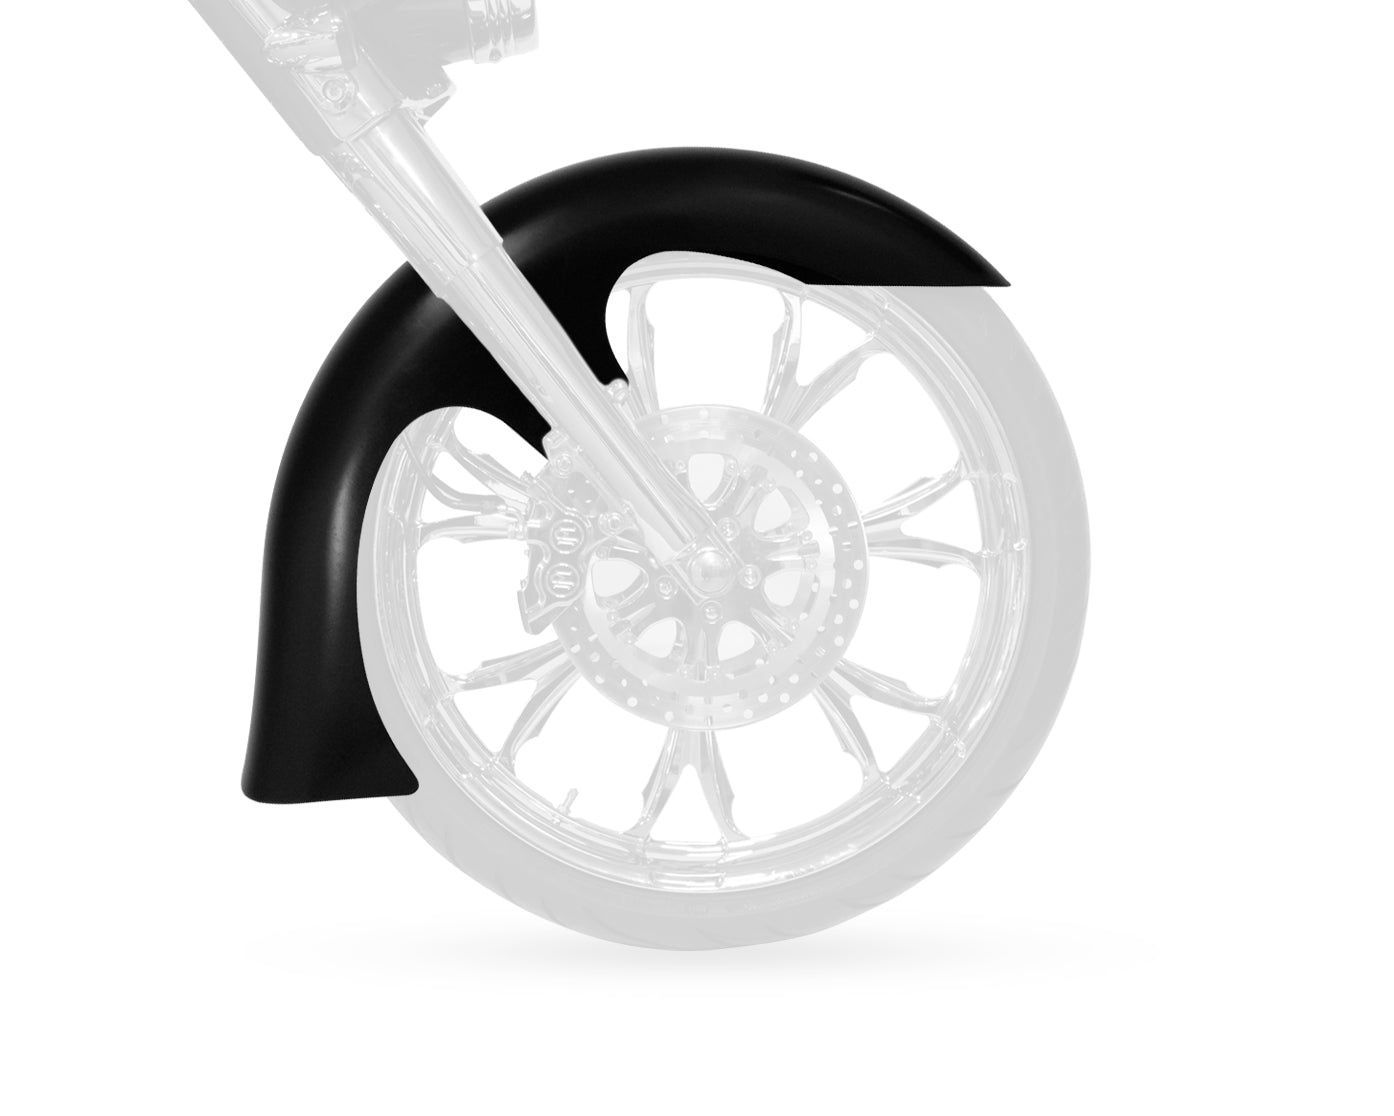 Slicer Stamped Steel Big Wheel Front Fender FIT KIT for Harley-Davidson 2014-2016 Touring Motorcycle Models